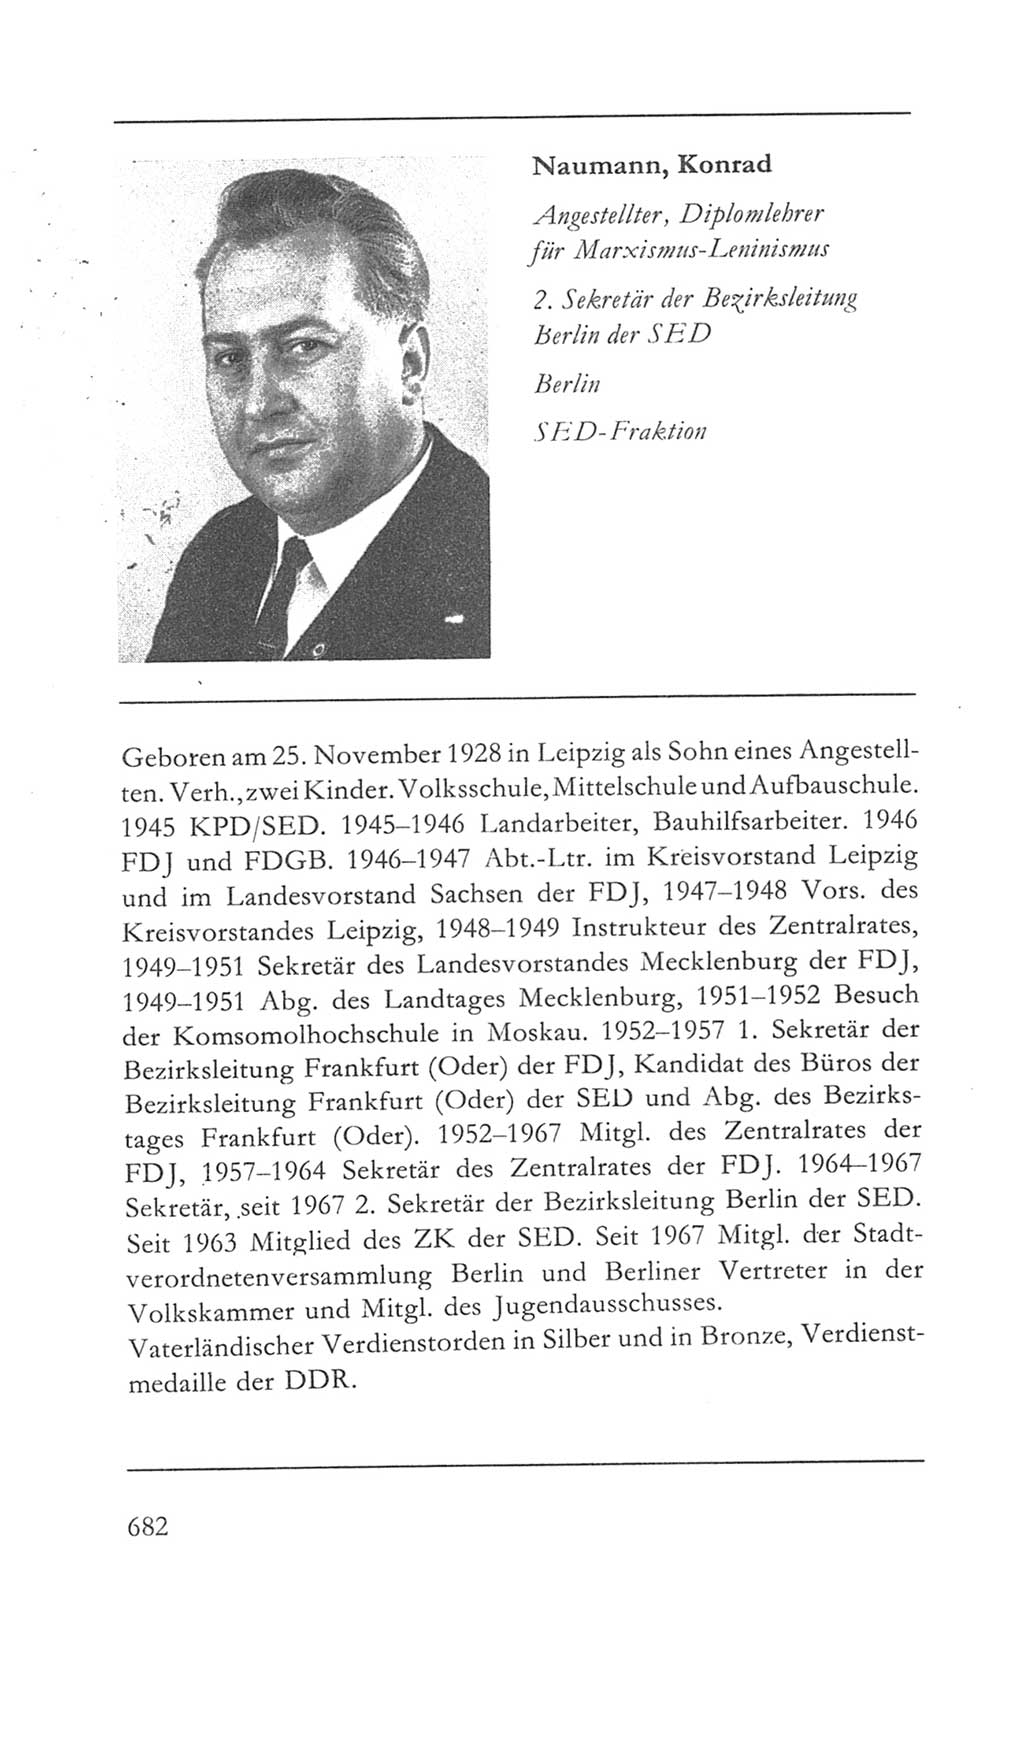 Volkskammer (VK) der Deutschen Demokratischen Republik (DDR) 5. Wahlperiode 1967-1971, Seite 682 (VK. DDR 5. WP. 1967-1971, S. 682)